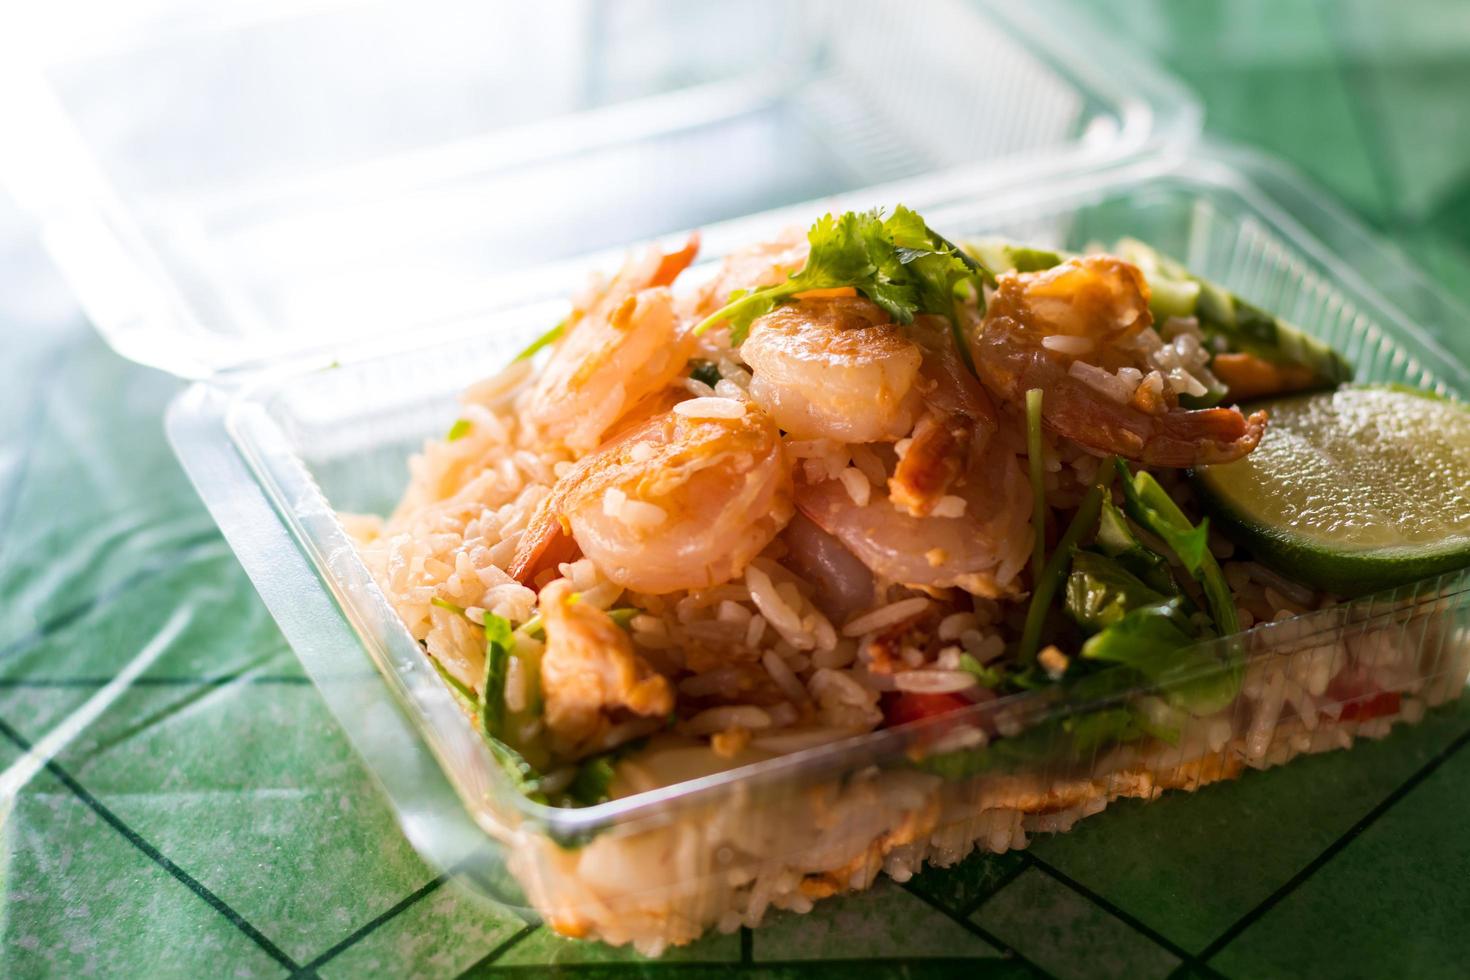 arroz frito coberto com camarão em uma caixa de plástico. foto